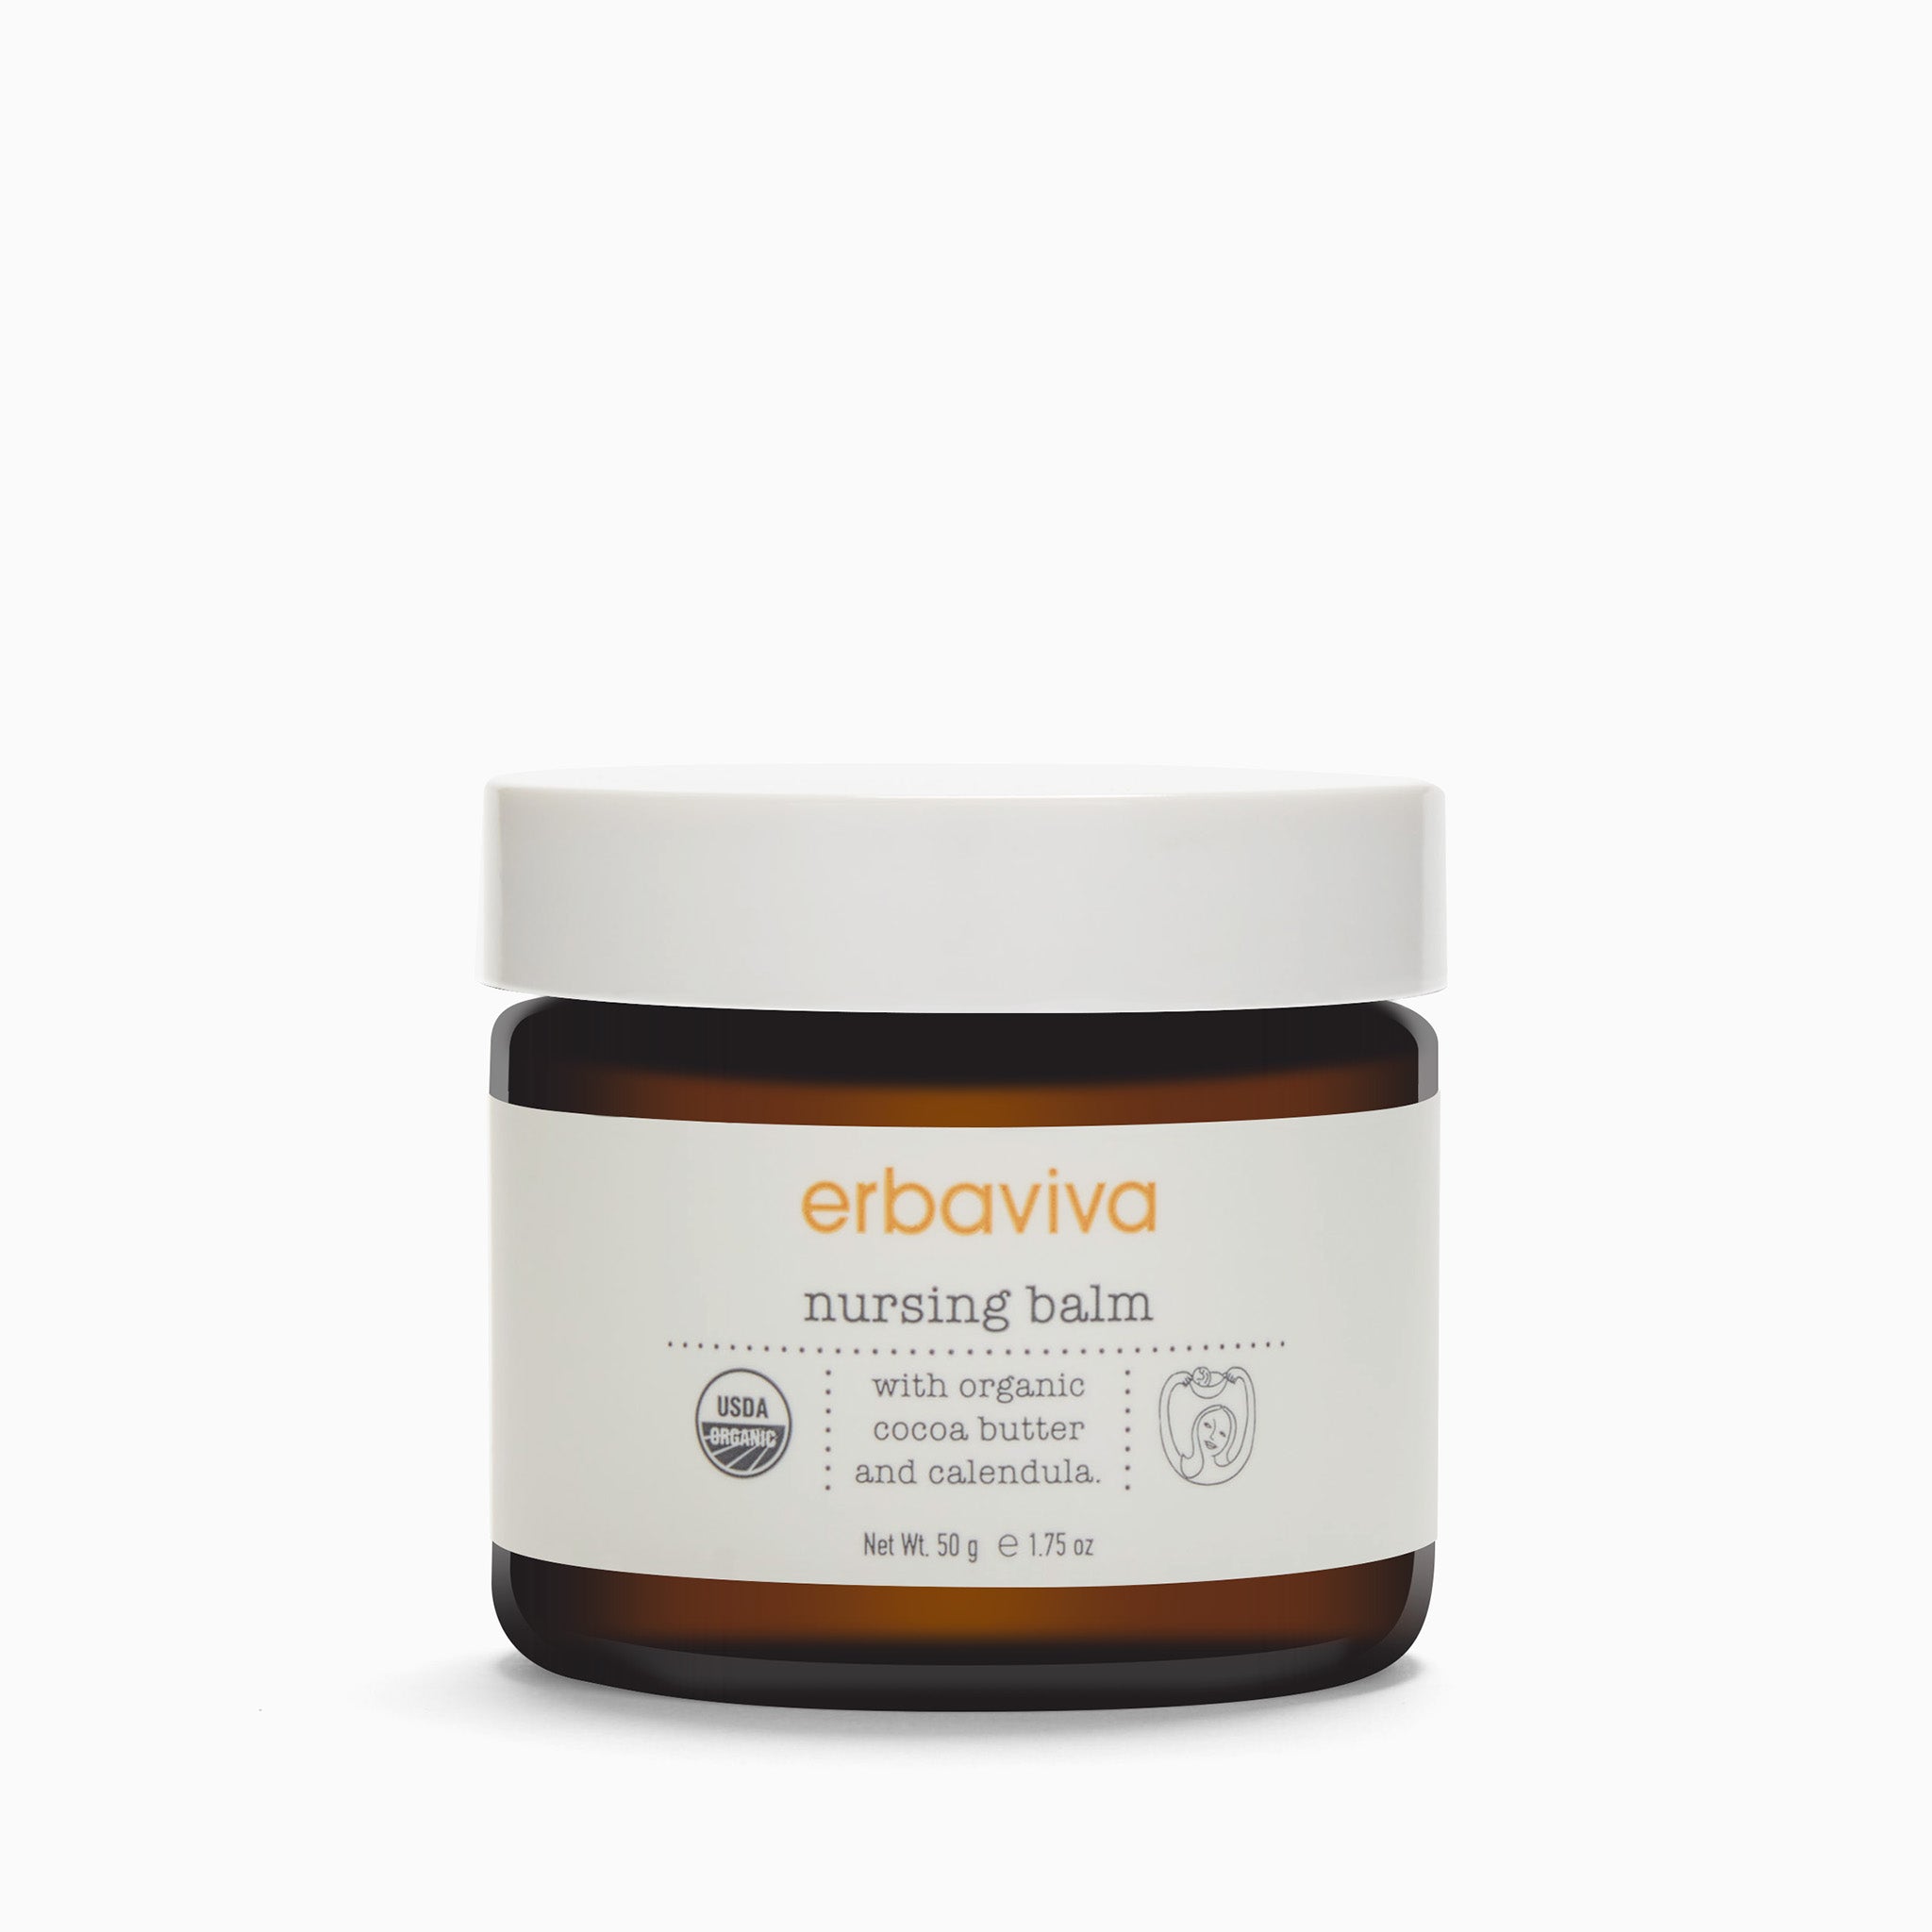 Nipple Cream – Eva Naturals